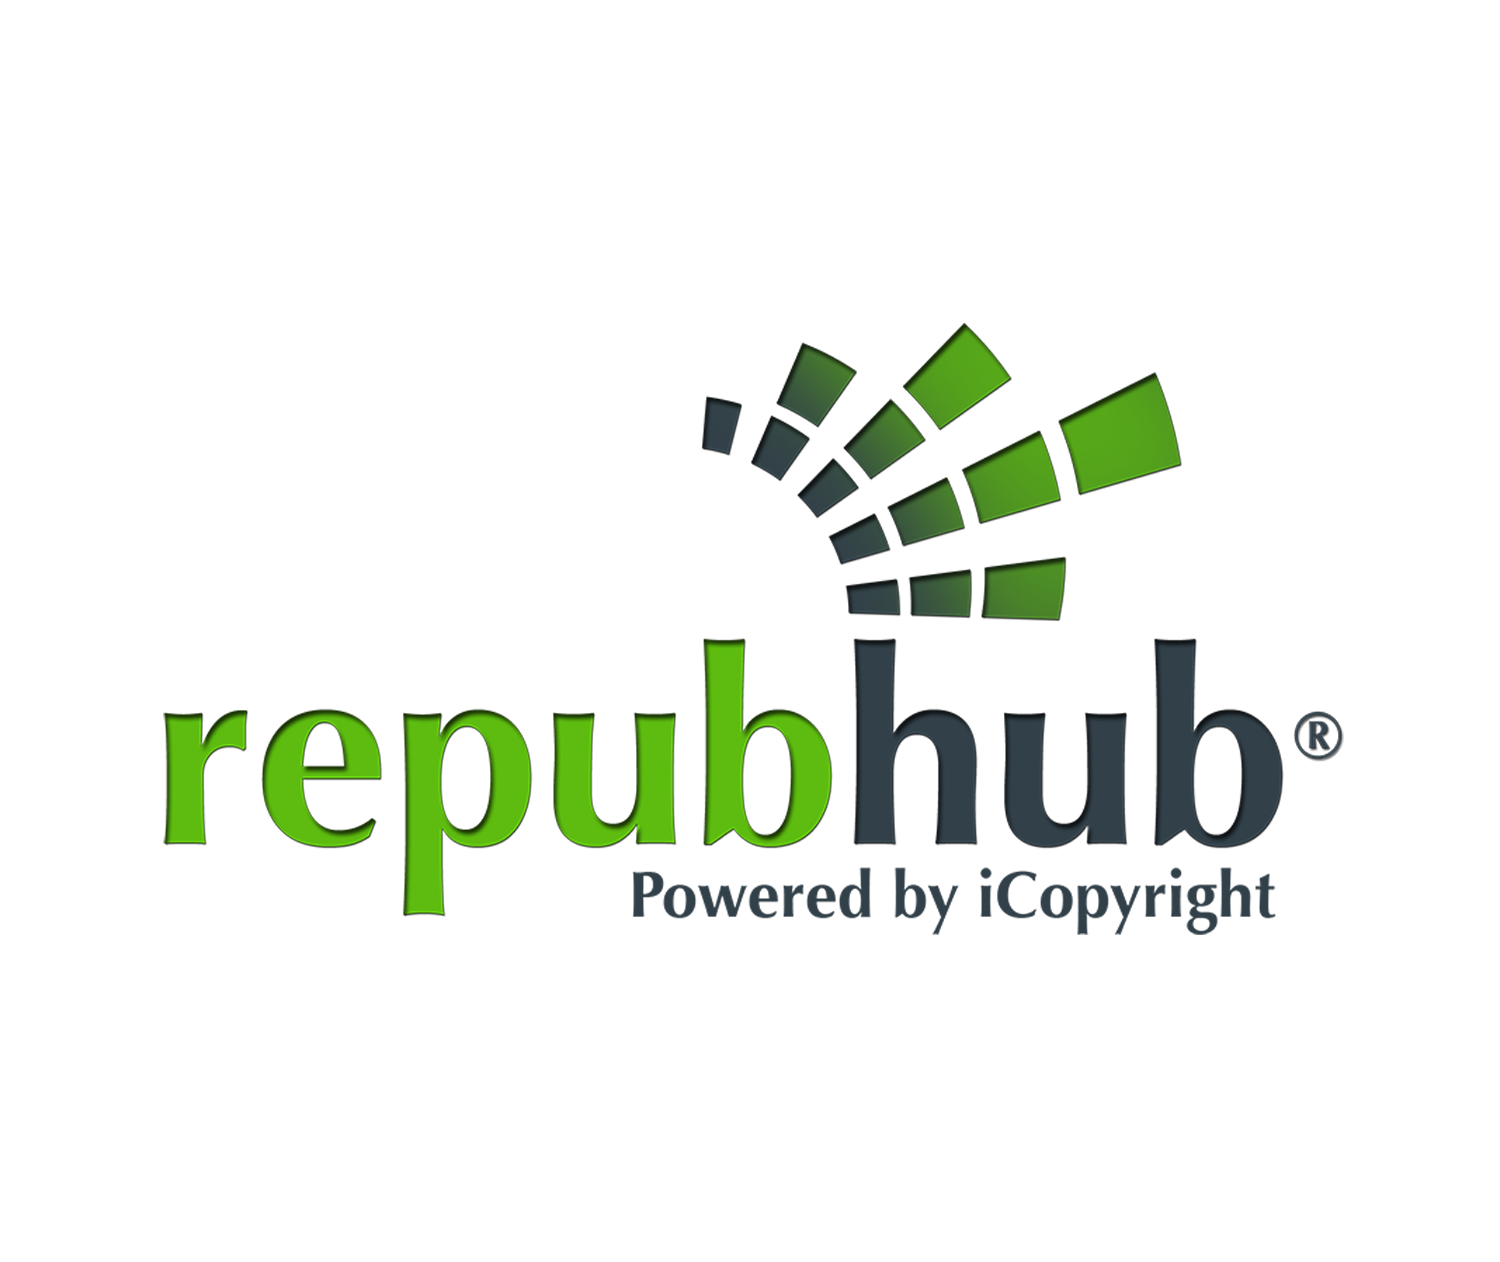 repubhub logo